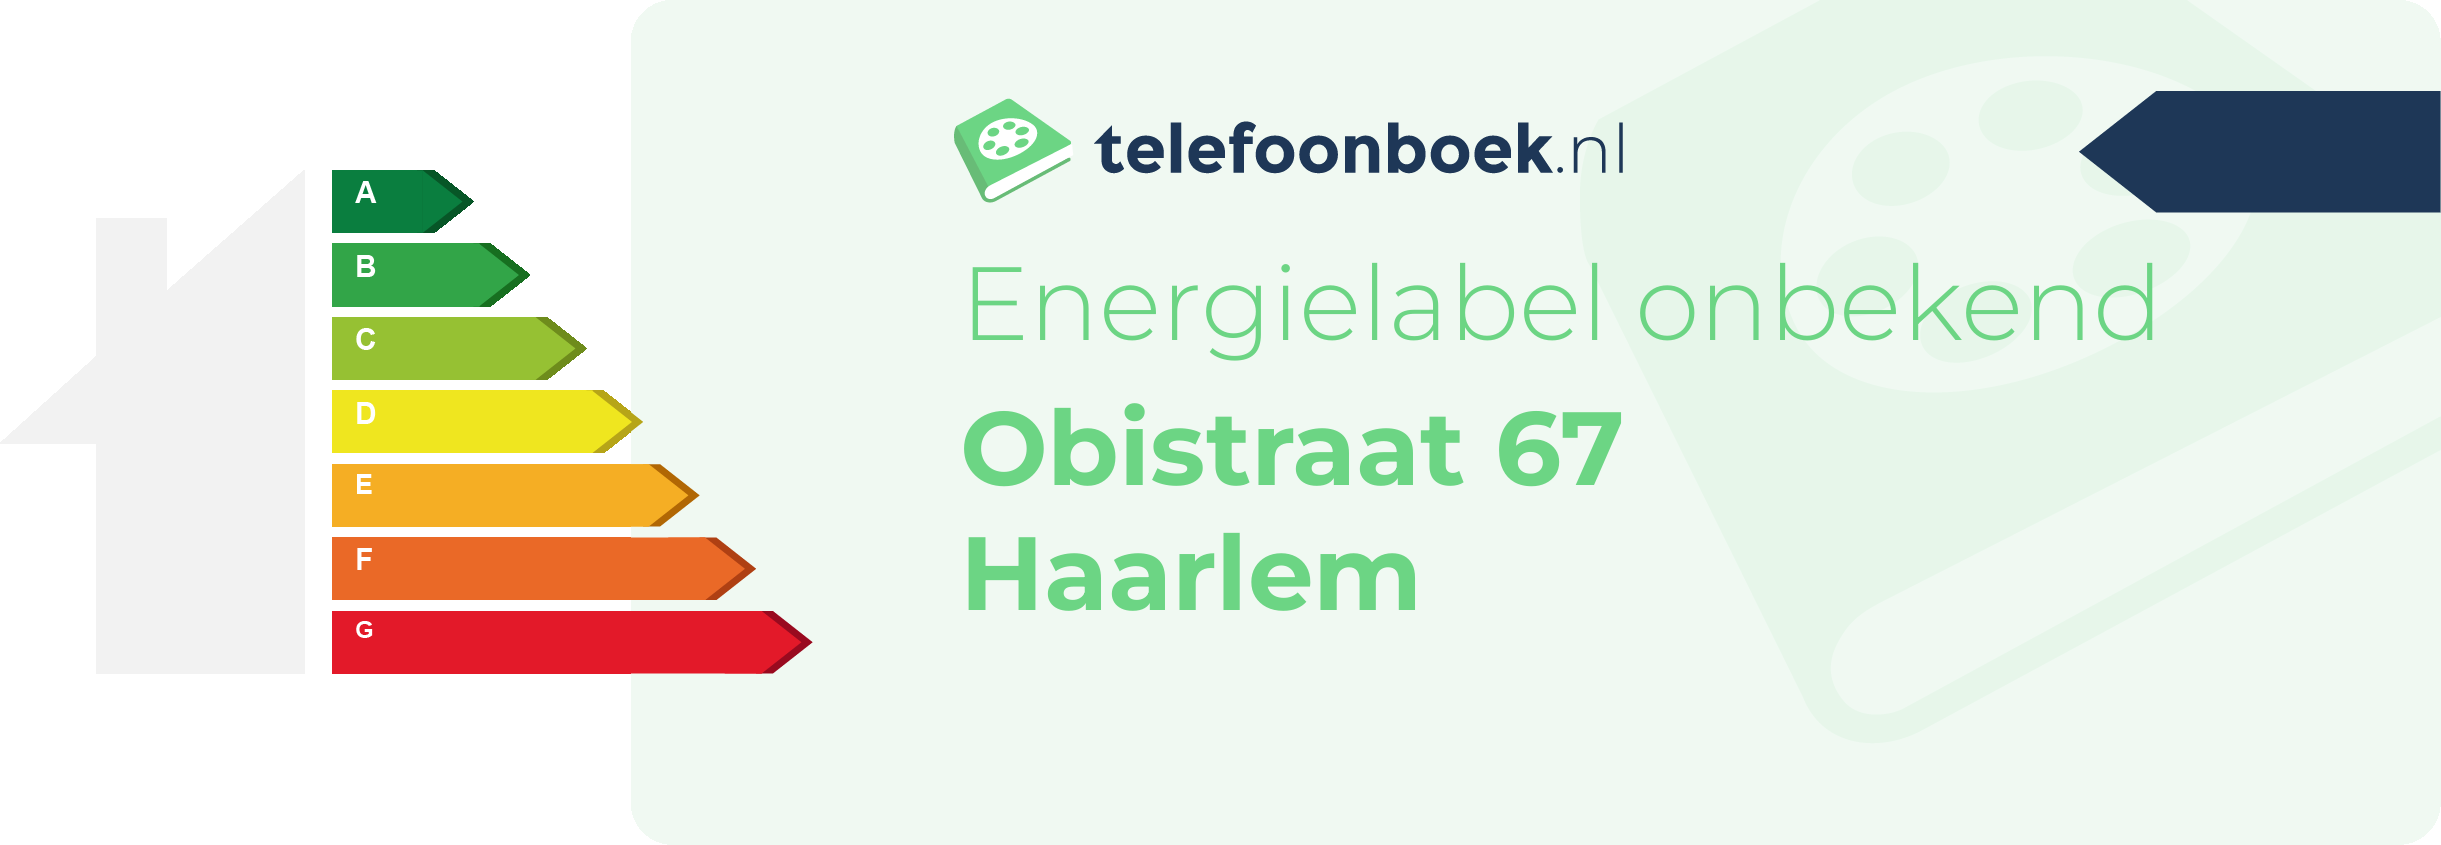 Energielabel Obistraat 67 Haarlem